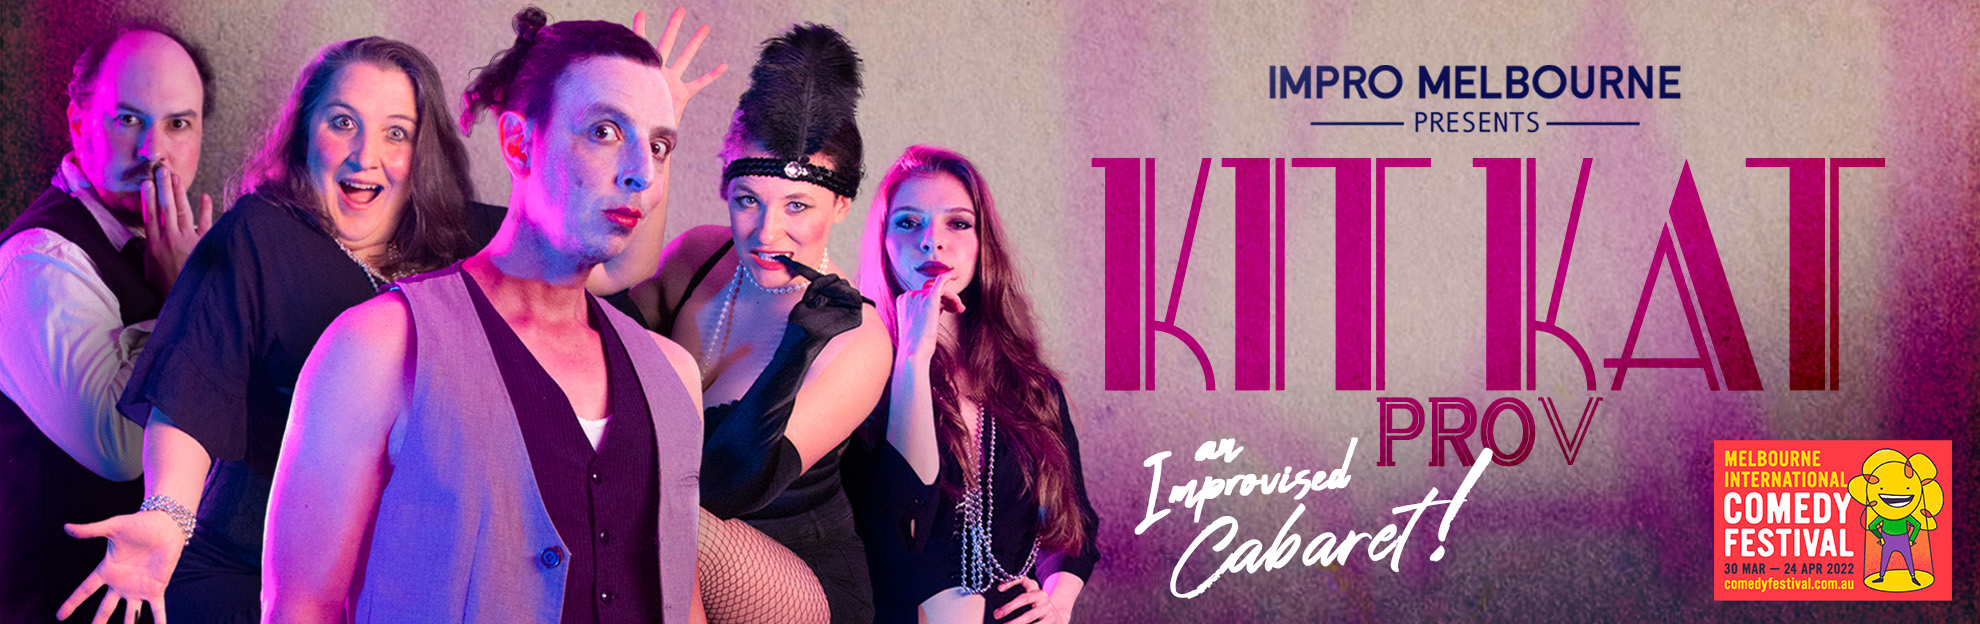 Kit Kat Prov - Comedy Festival